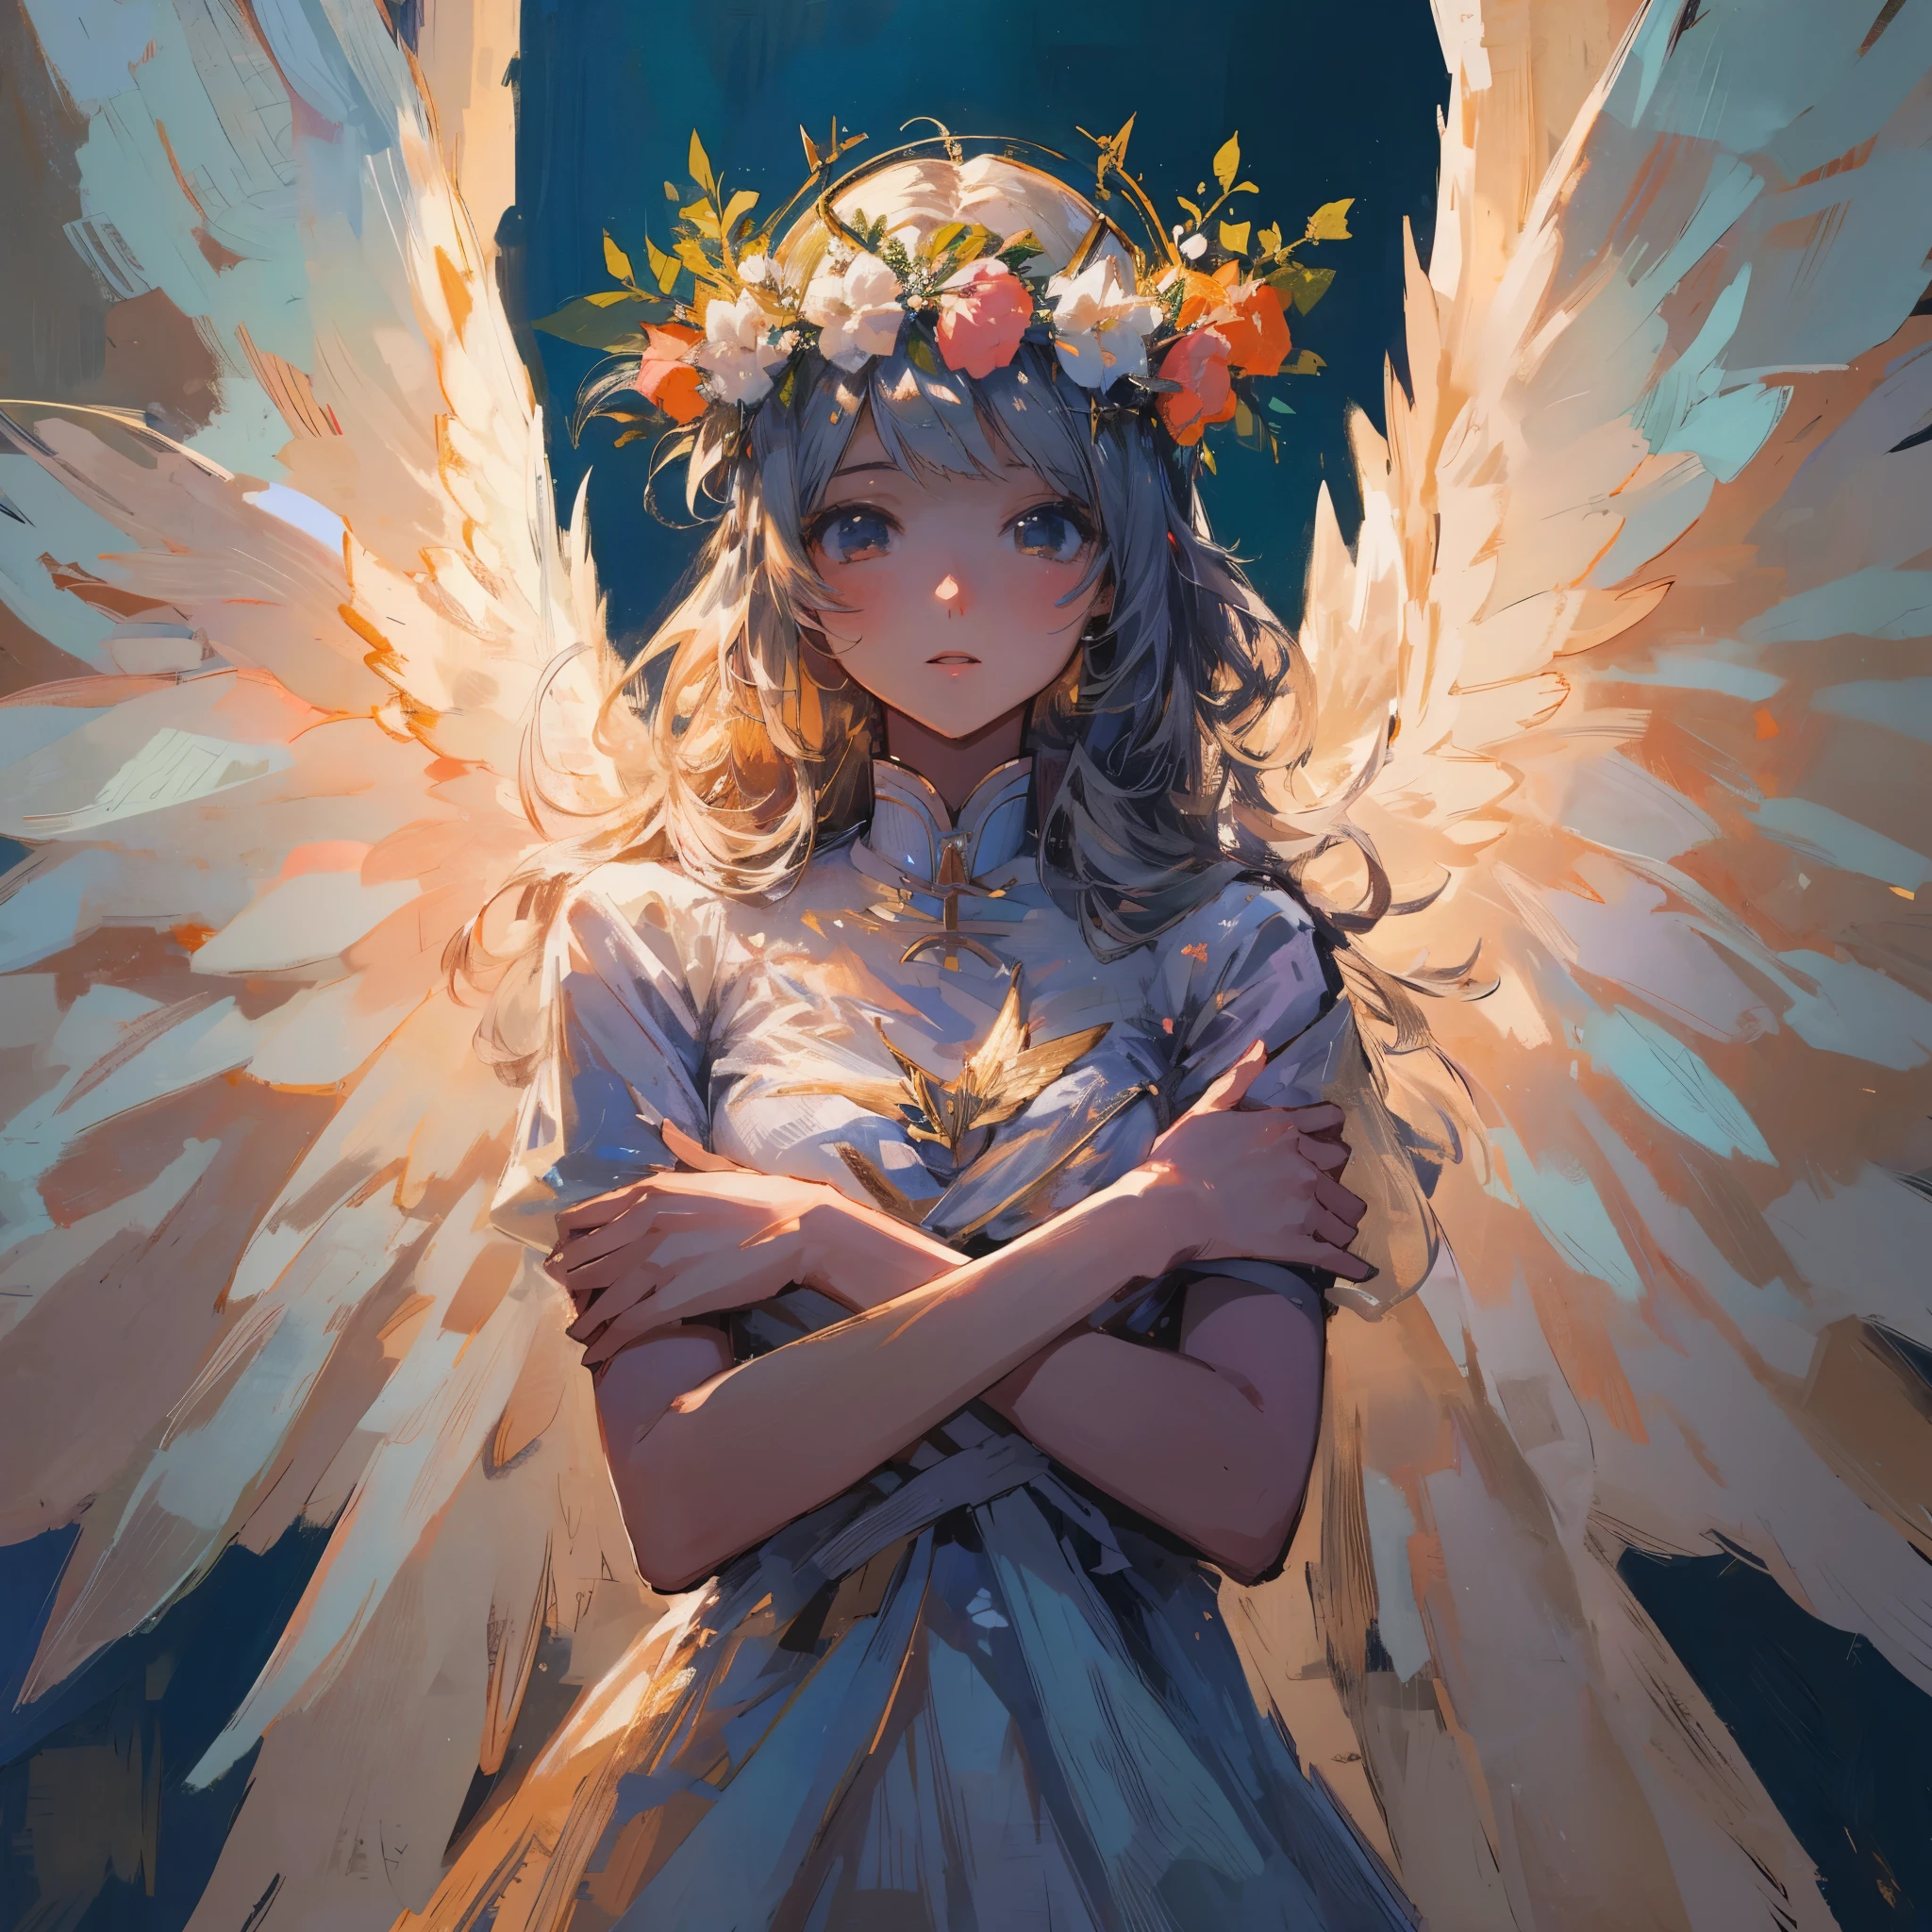 带翅膀和花冠的女人的油画, of an beautiful 天使般的女の子, 美丽的天使, of 美丽的天使, portrait of a 美丽的天使, 美丽的女天使, 天使般的女の子, beautiful 天使般的女の子 portrait, 带翅膀的女孩天使, 天使般的羽を持つ少女, glowing 天使般的 being, 天使般的al, 作者：Marie Angell, 天使般的絵がいっぱい, 全身天使, 天使般的